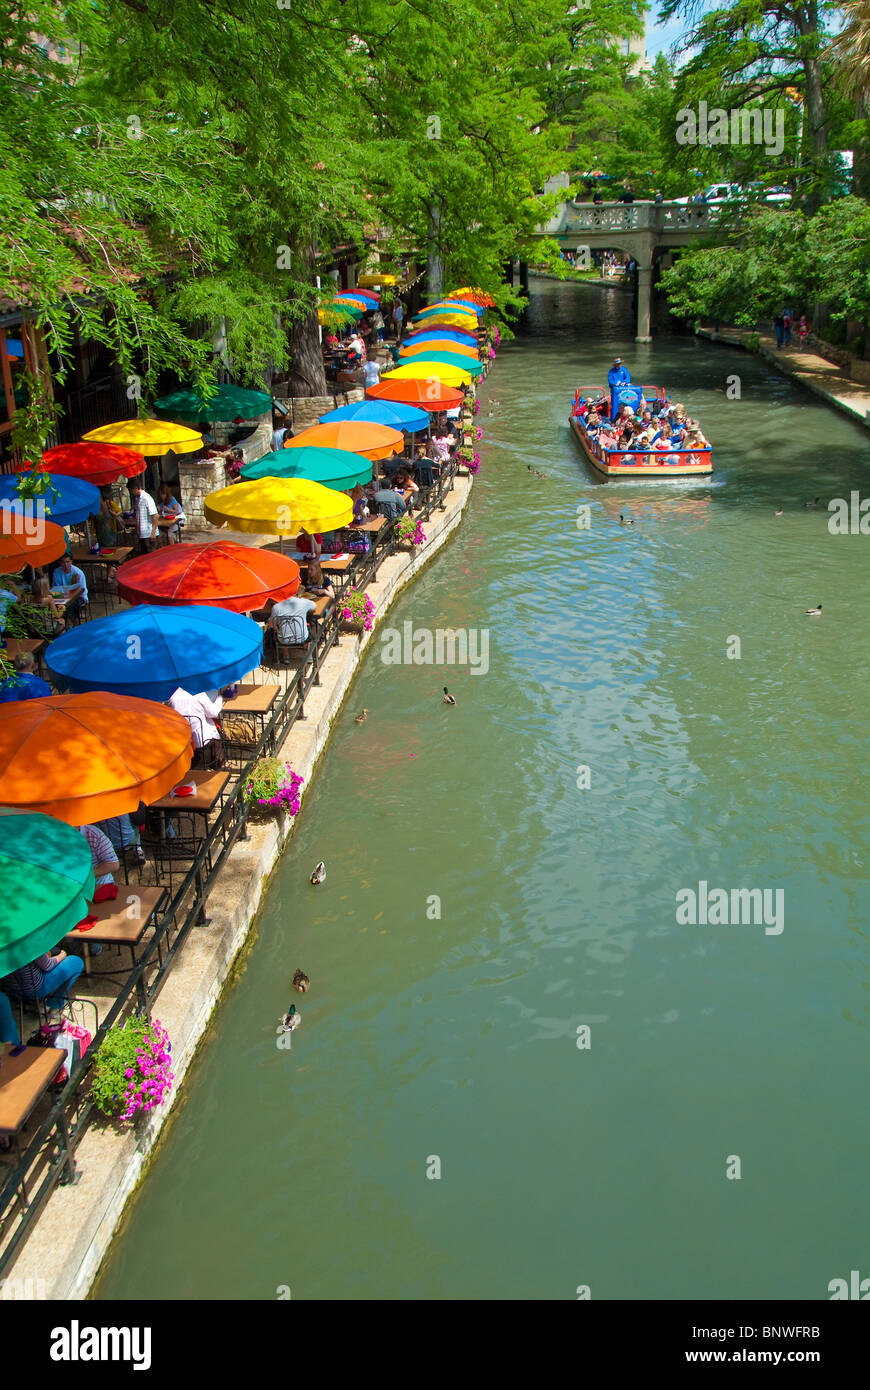 Restaurants säumen der River Walk am Paseo del Rio in der Innenstadt von San Antonio, Texas, USA Stockfoto